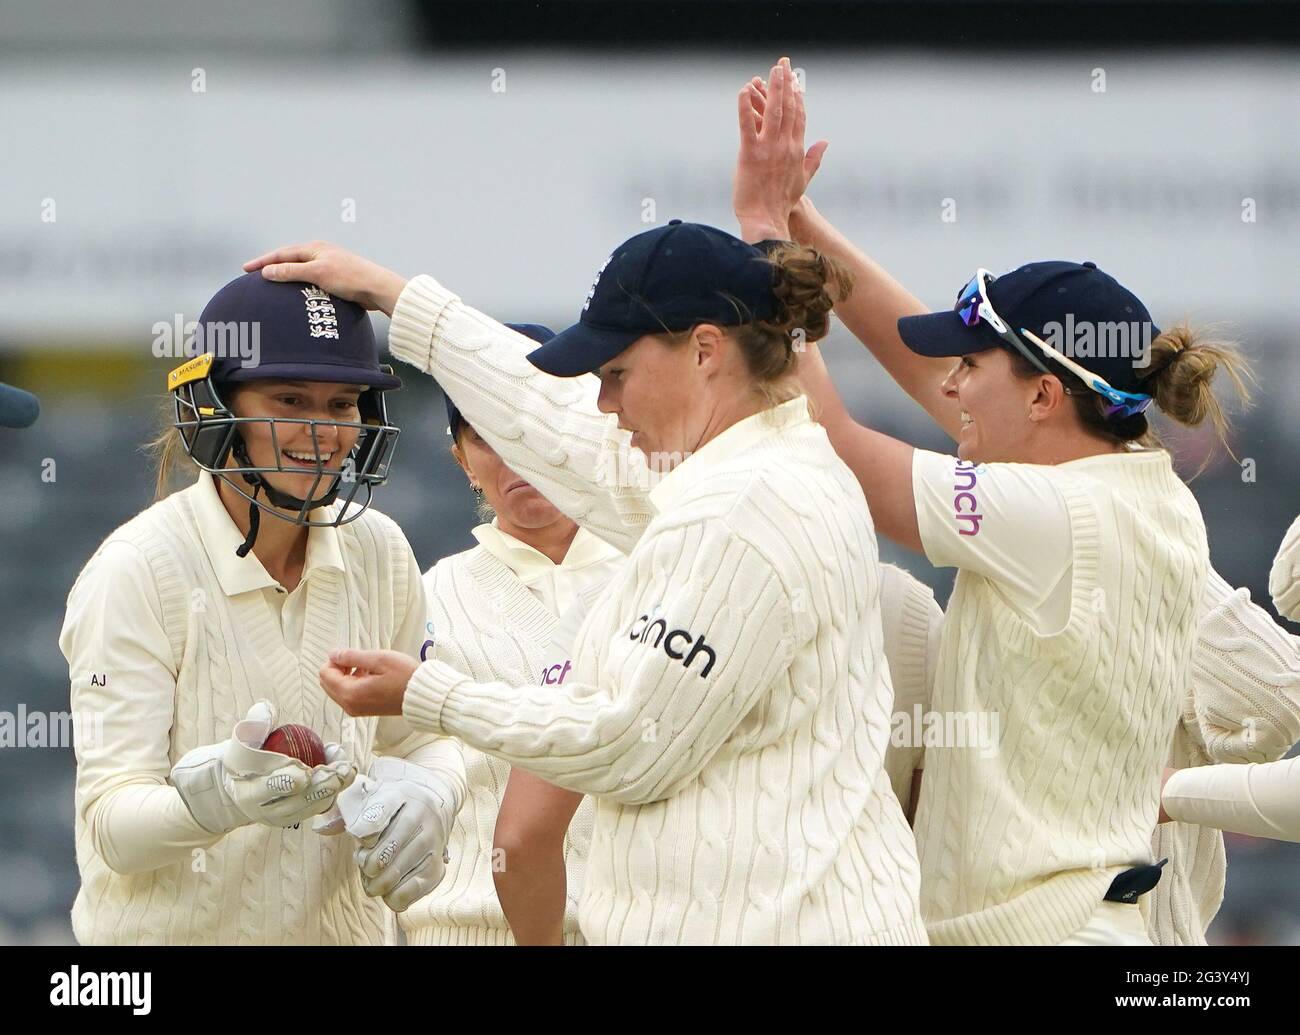 Amy Jones, en Angleterre, célèbre après avoir pris un match de cricket de Sneh Rana en Inde pendant le troisième jour du match de test international des femmes au stade du comté de Bristol. Date de la photo: Vendredi 18 juin 2021. Banque D'Images